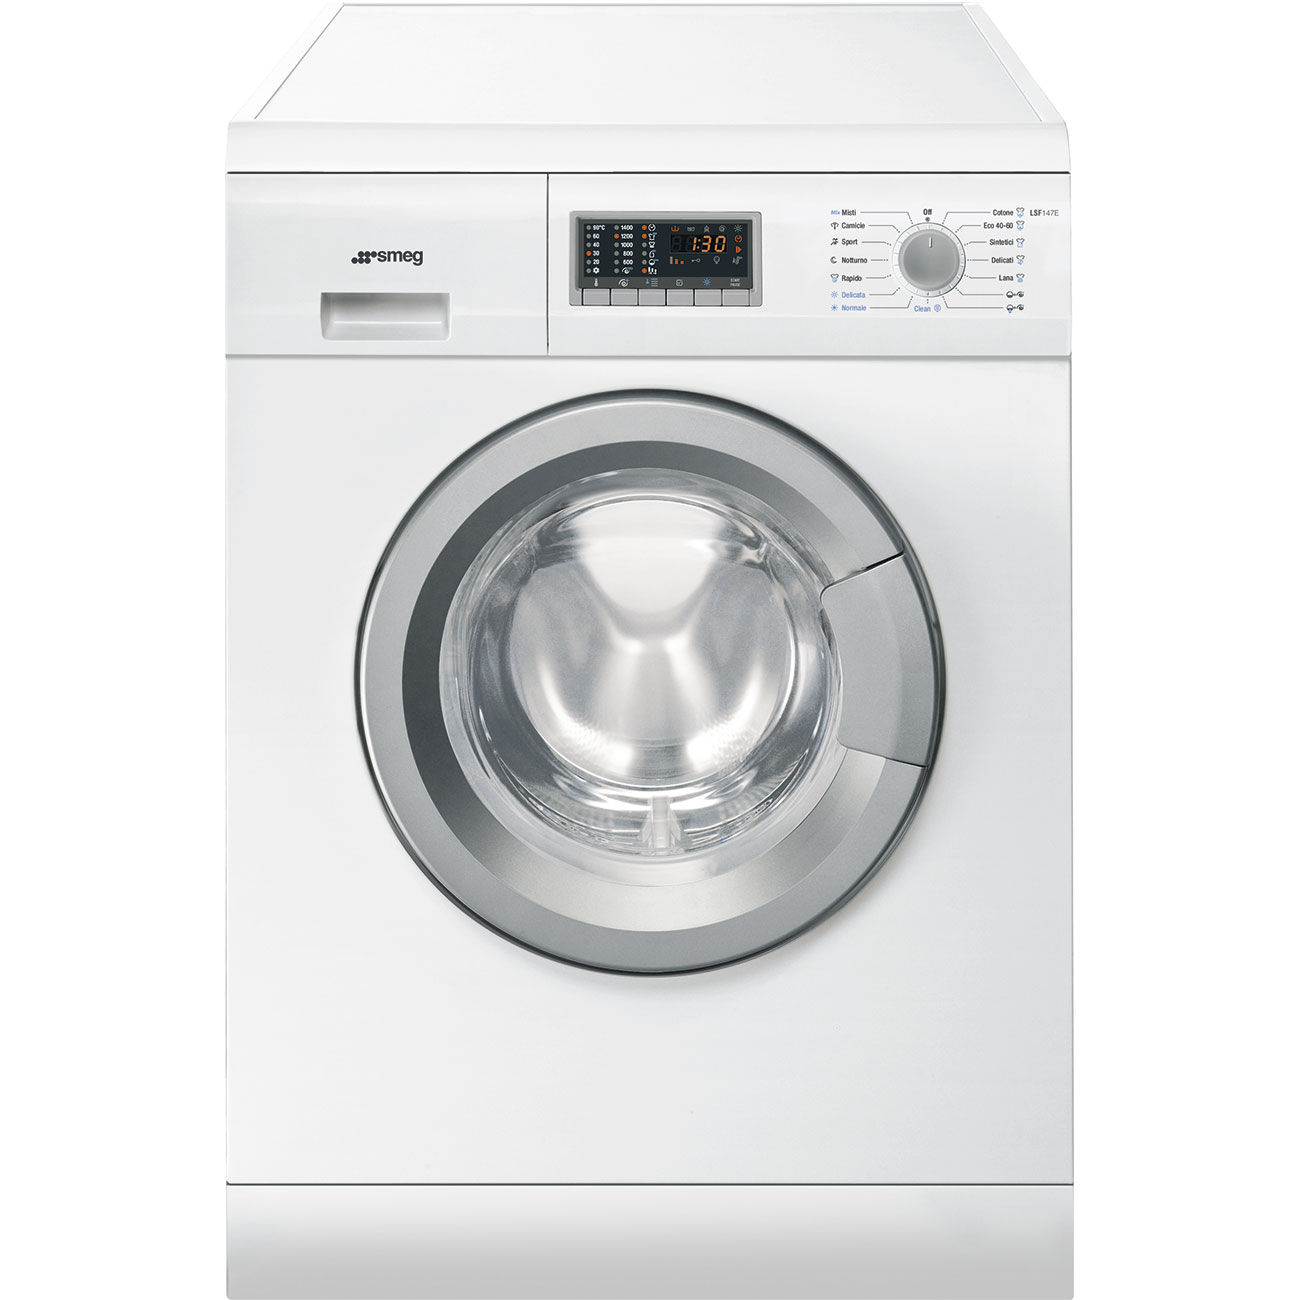 Стиральная машина Smeg белый, серебристый встраиваемая стиральная машина smeg lbi147